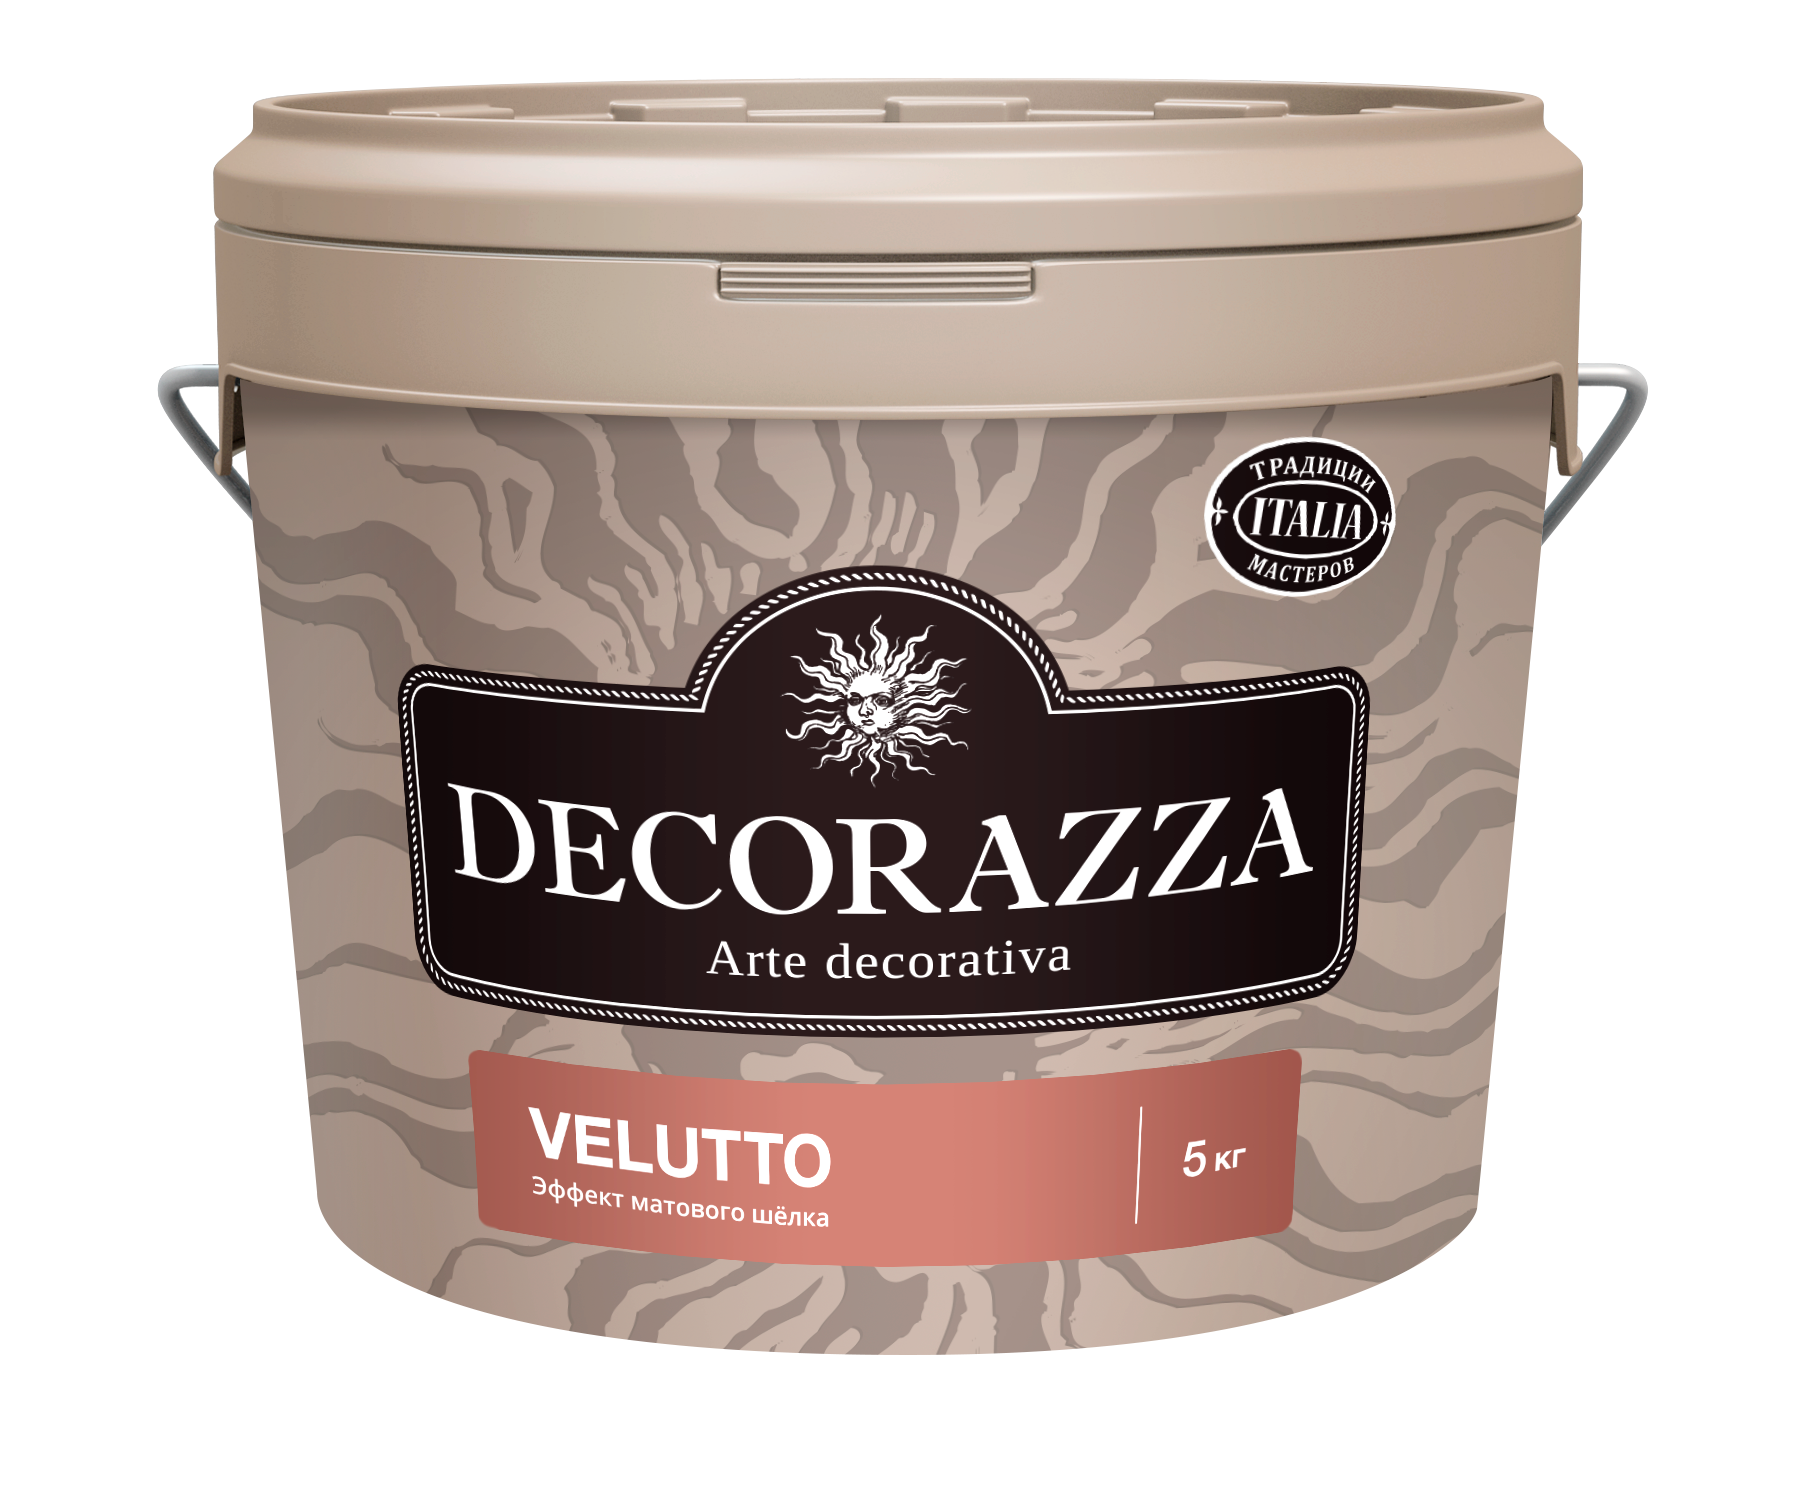 Декоративная штукатурка Decorazza Velluto VT 001, 5 кг декоративная штукатурка decorazza velluto vt 001 5 кг